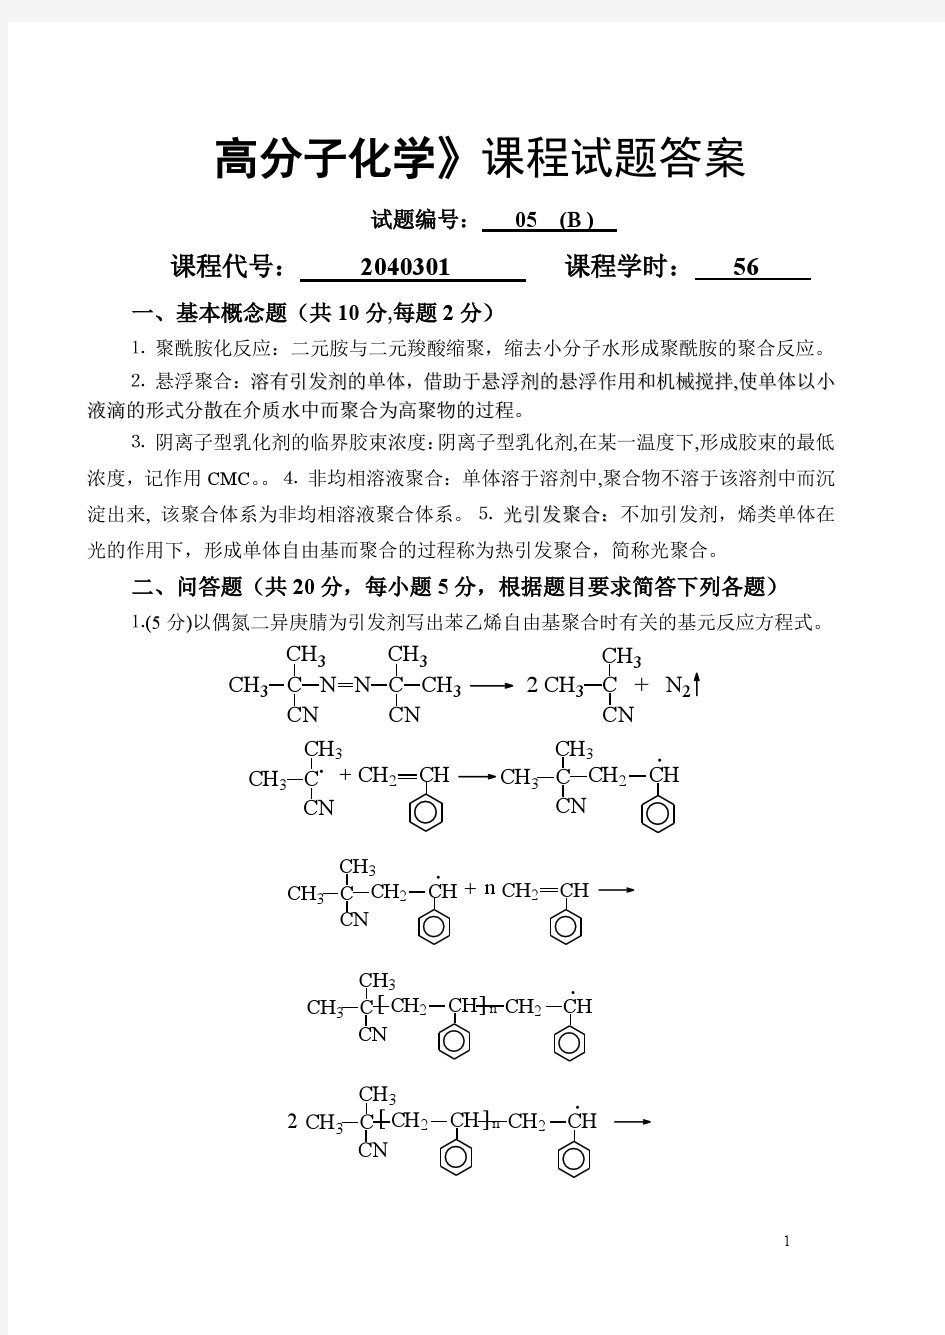 高分子化学试卷库(05B)答案